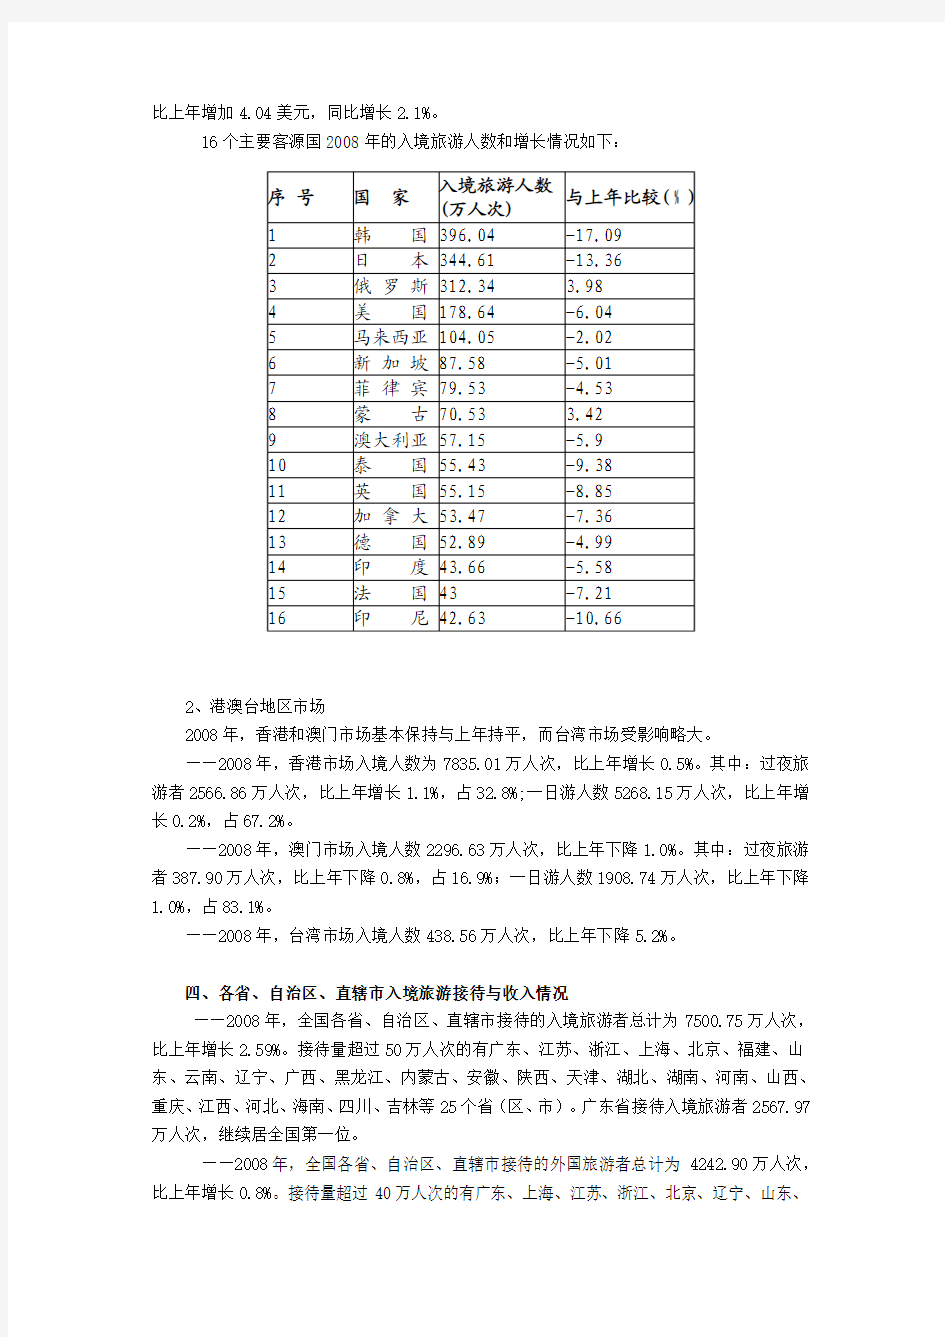 2008年中国旅游业统计公报等数据